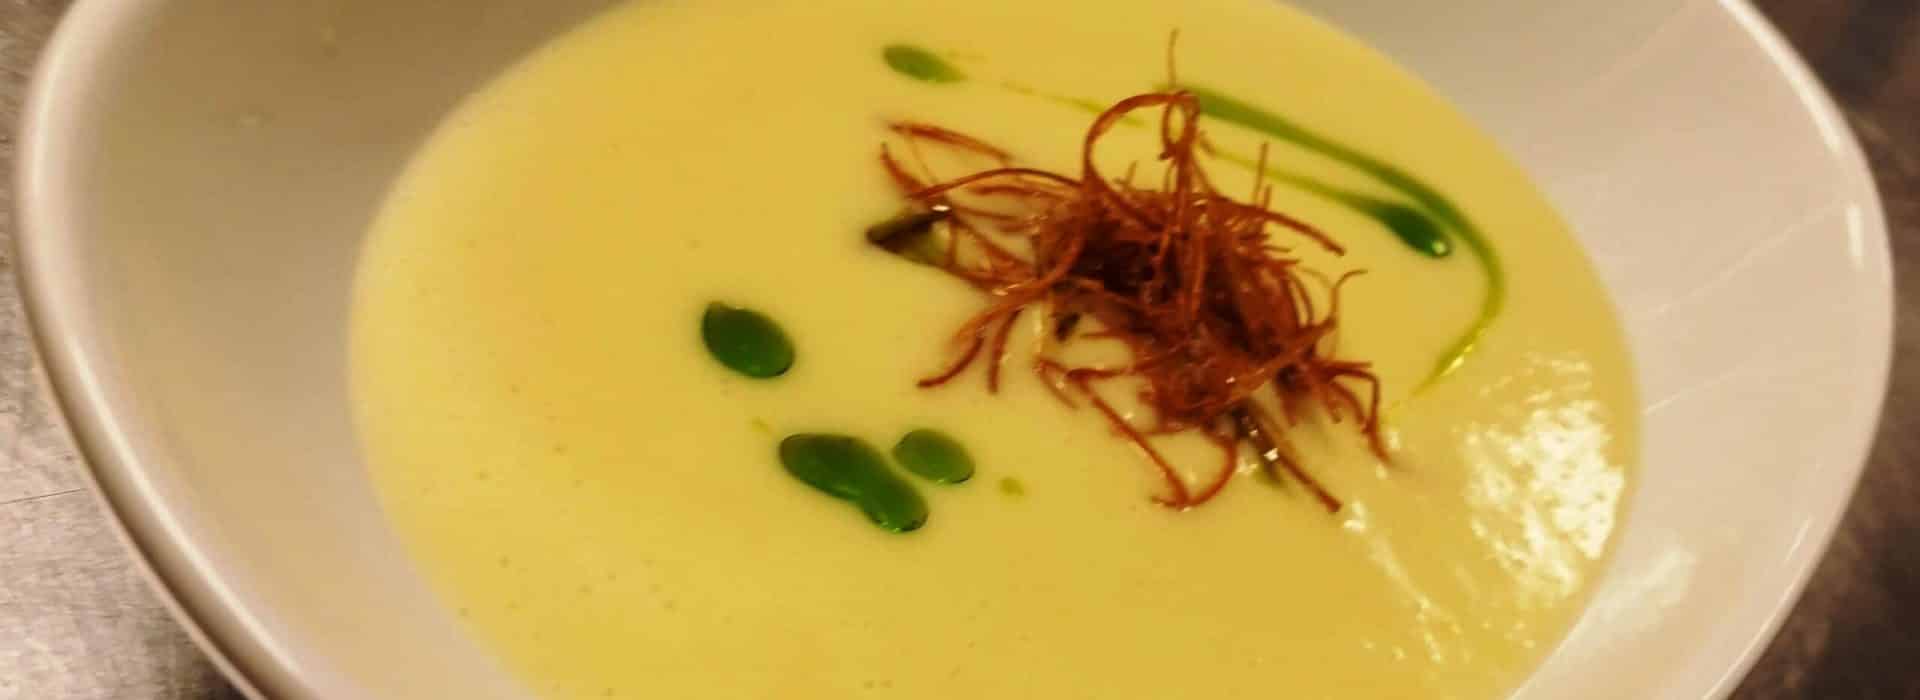 a bowl of potato leek soup recipe|potato leek soup recipe at Rabbit Hill Inn|Potato Leek soup recipe from Rabbit Hill Inn